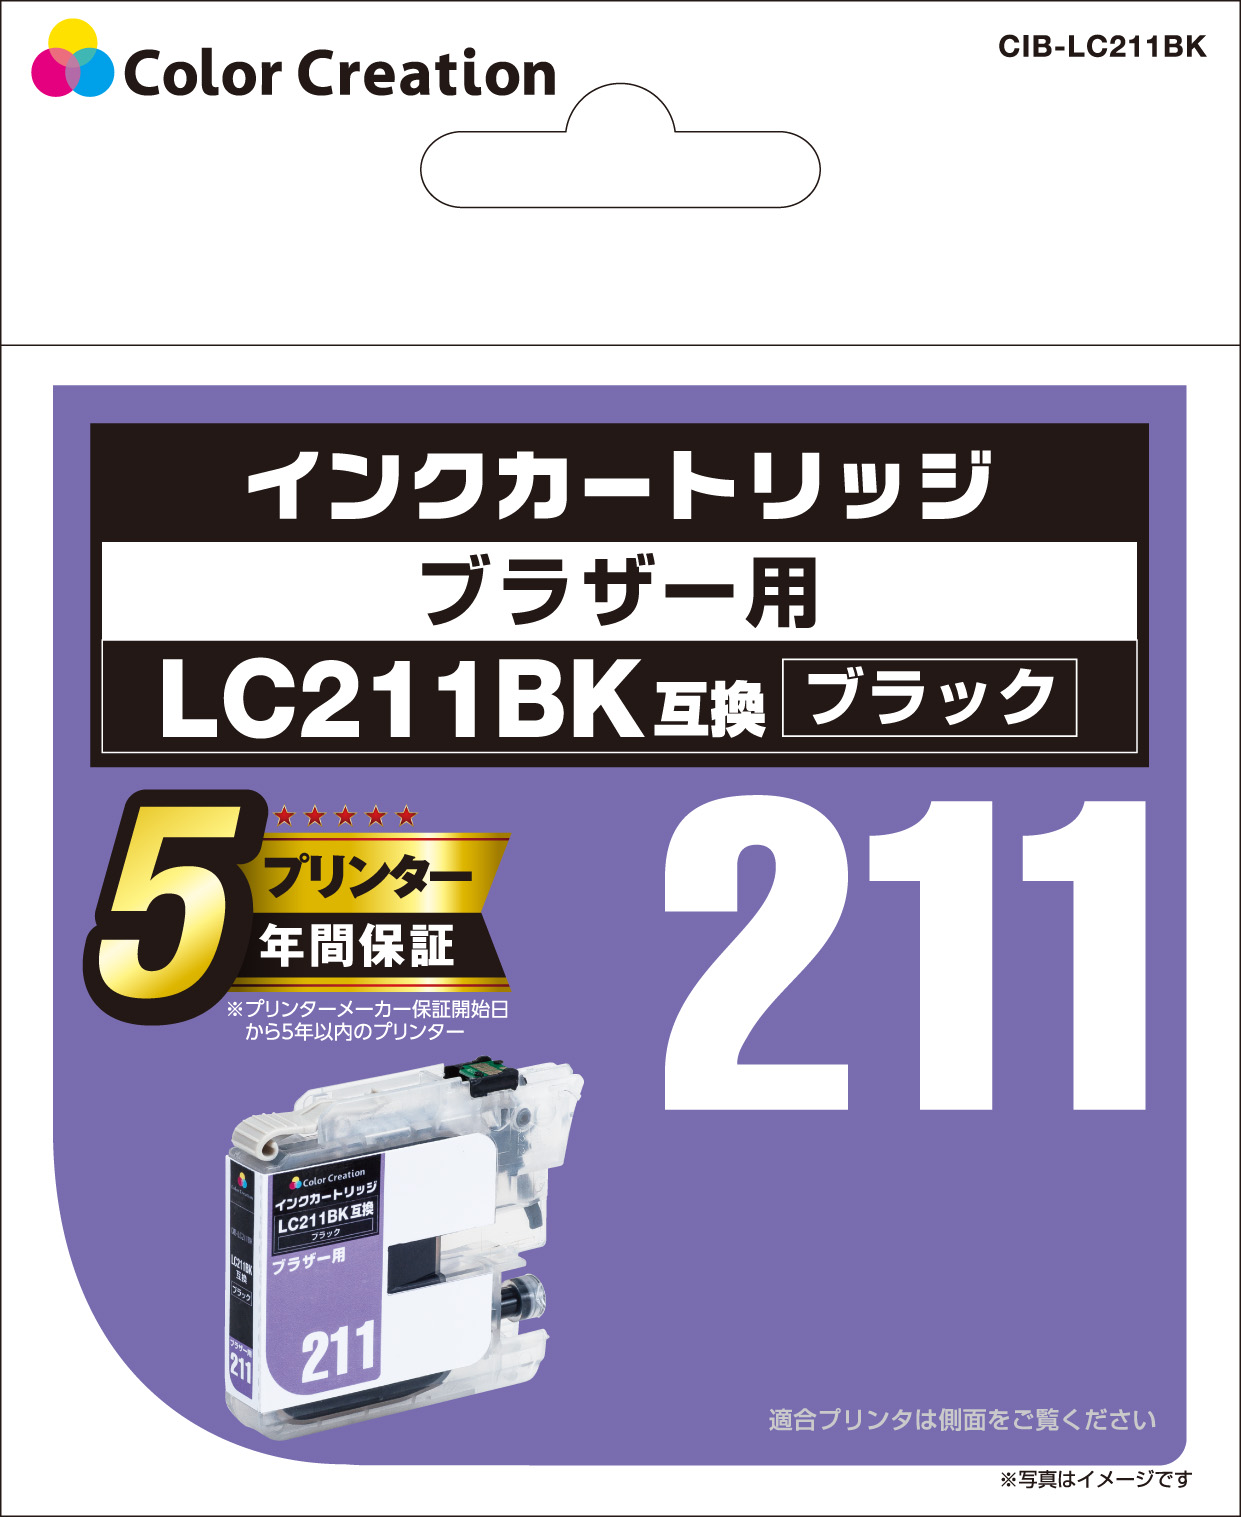 CIB-LC211BK